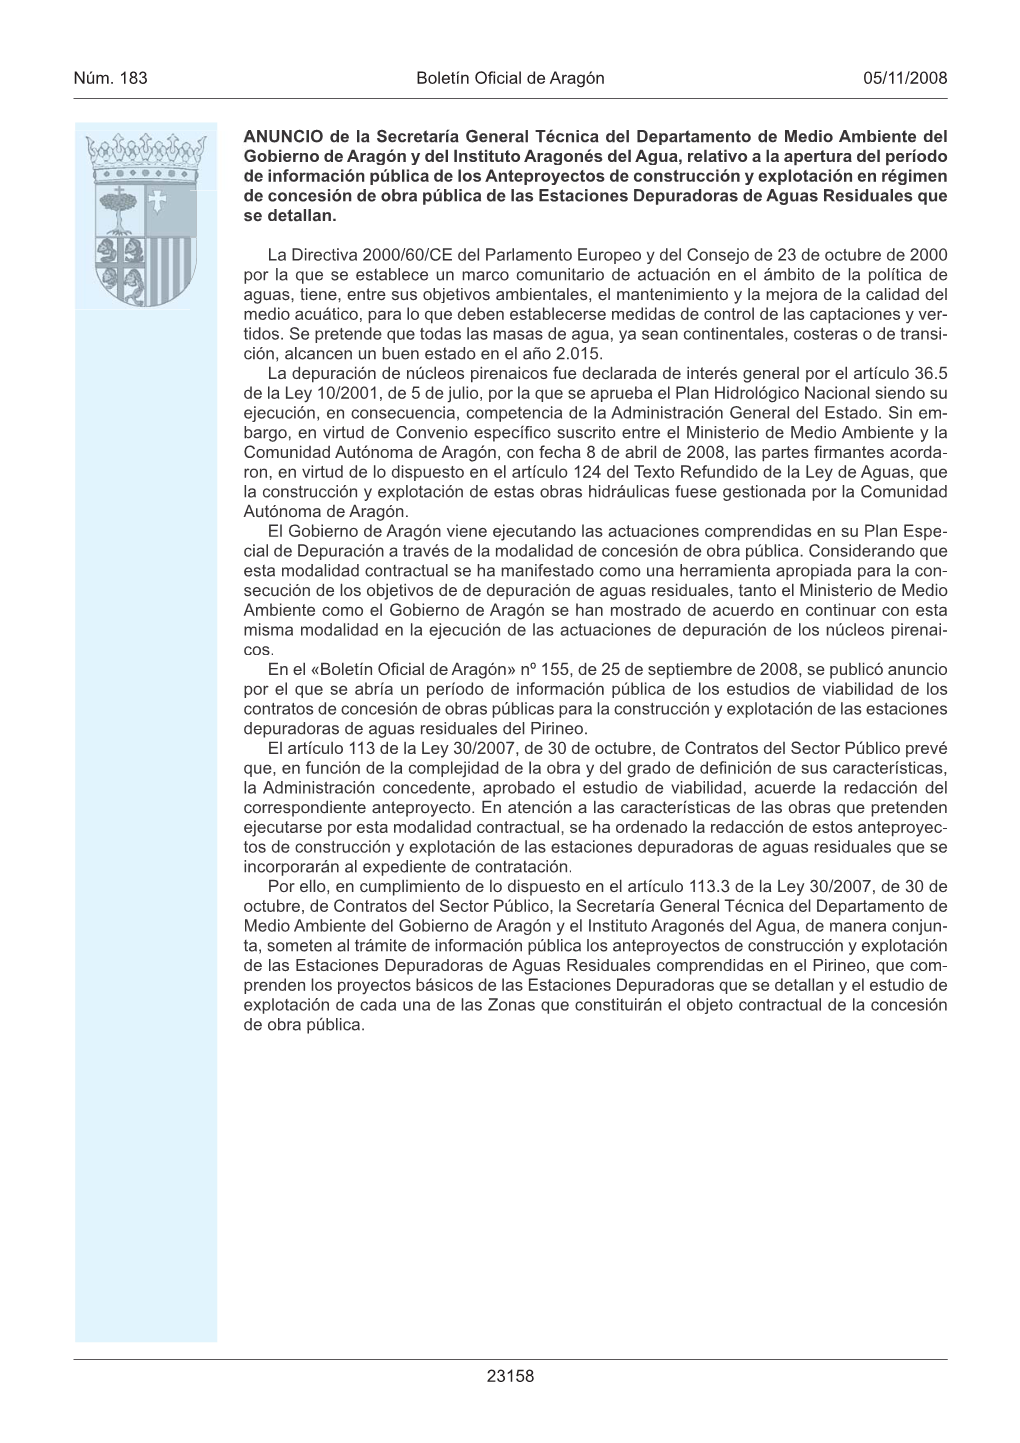 Núm. 183 Boletín Oficial De Aragón 05/11/2008 23158 ANUNCIO De La